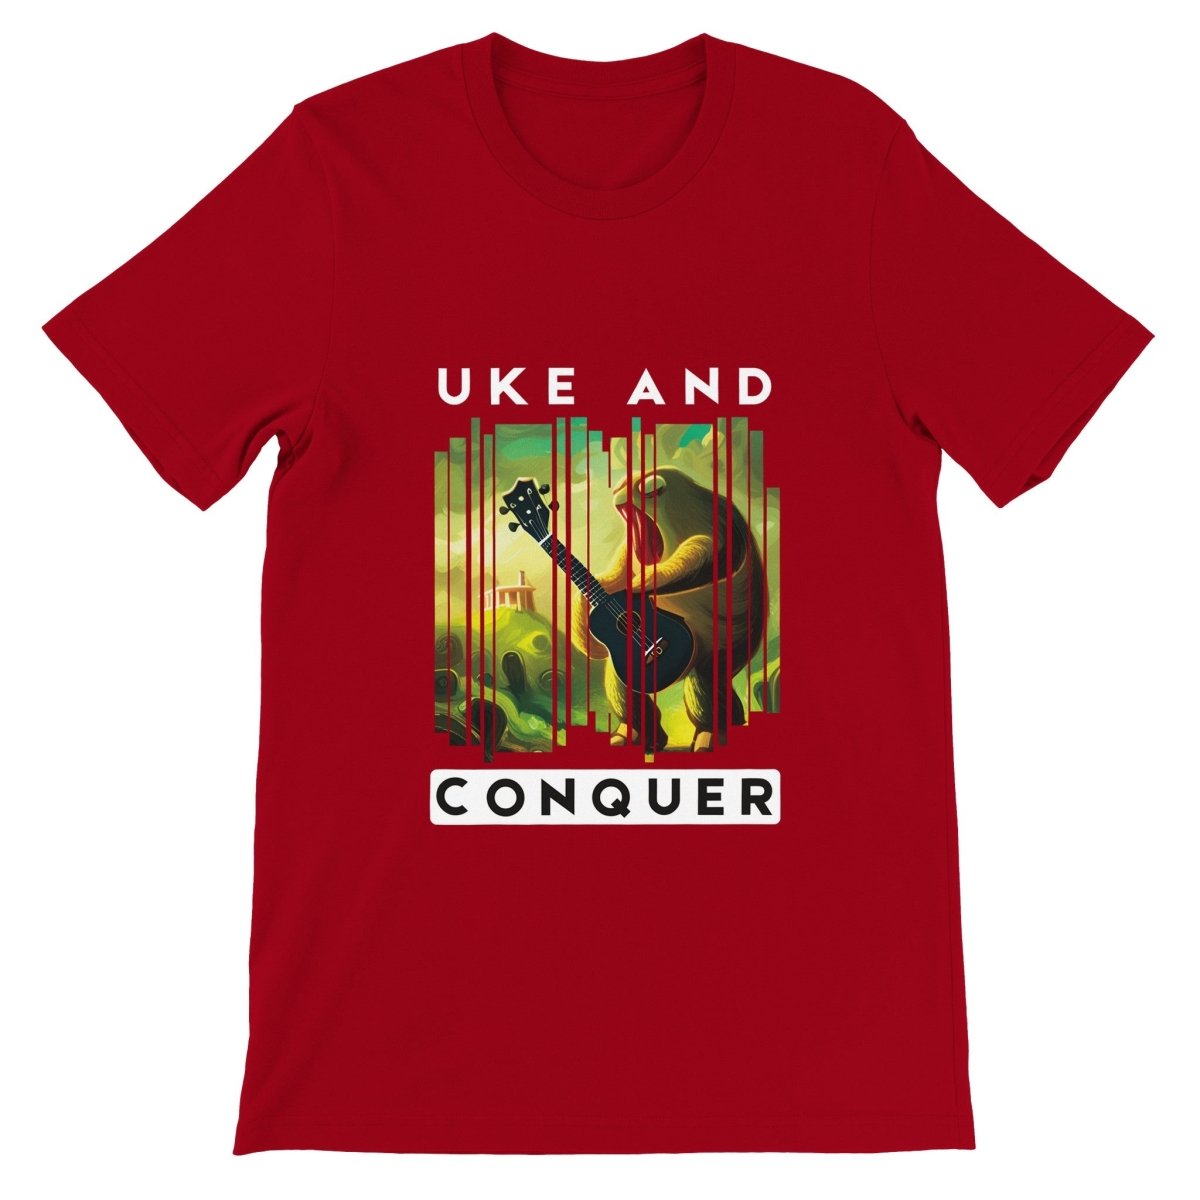 Uke and Conquer - Premium Ukulele Themed T-shirt - Uke Tastic - Navy - Free Delivery - Uke Tastic